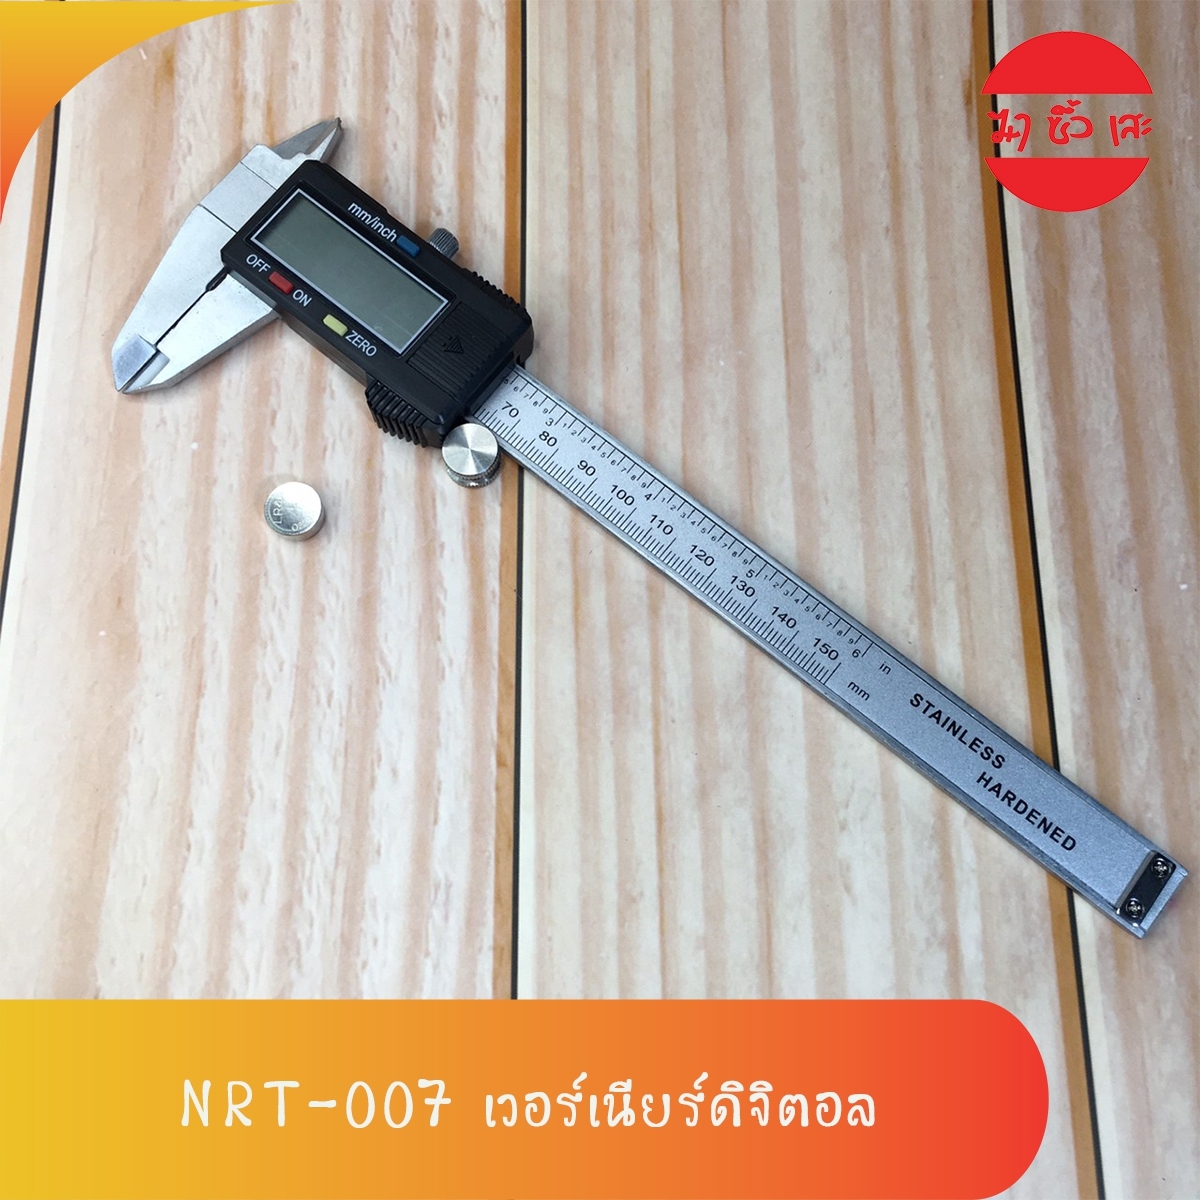 [NRT-007] NARITA คาลิปเปอร์ดิจิตอล เวอร์เนียร์ ดิจิตอล 6 นิ้ว Digital Vernier caliper(0-150mm) เวอร์เนียร์ ดิจิตอล ตัวเครื่องสแตนเลส